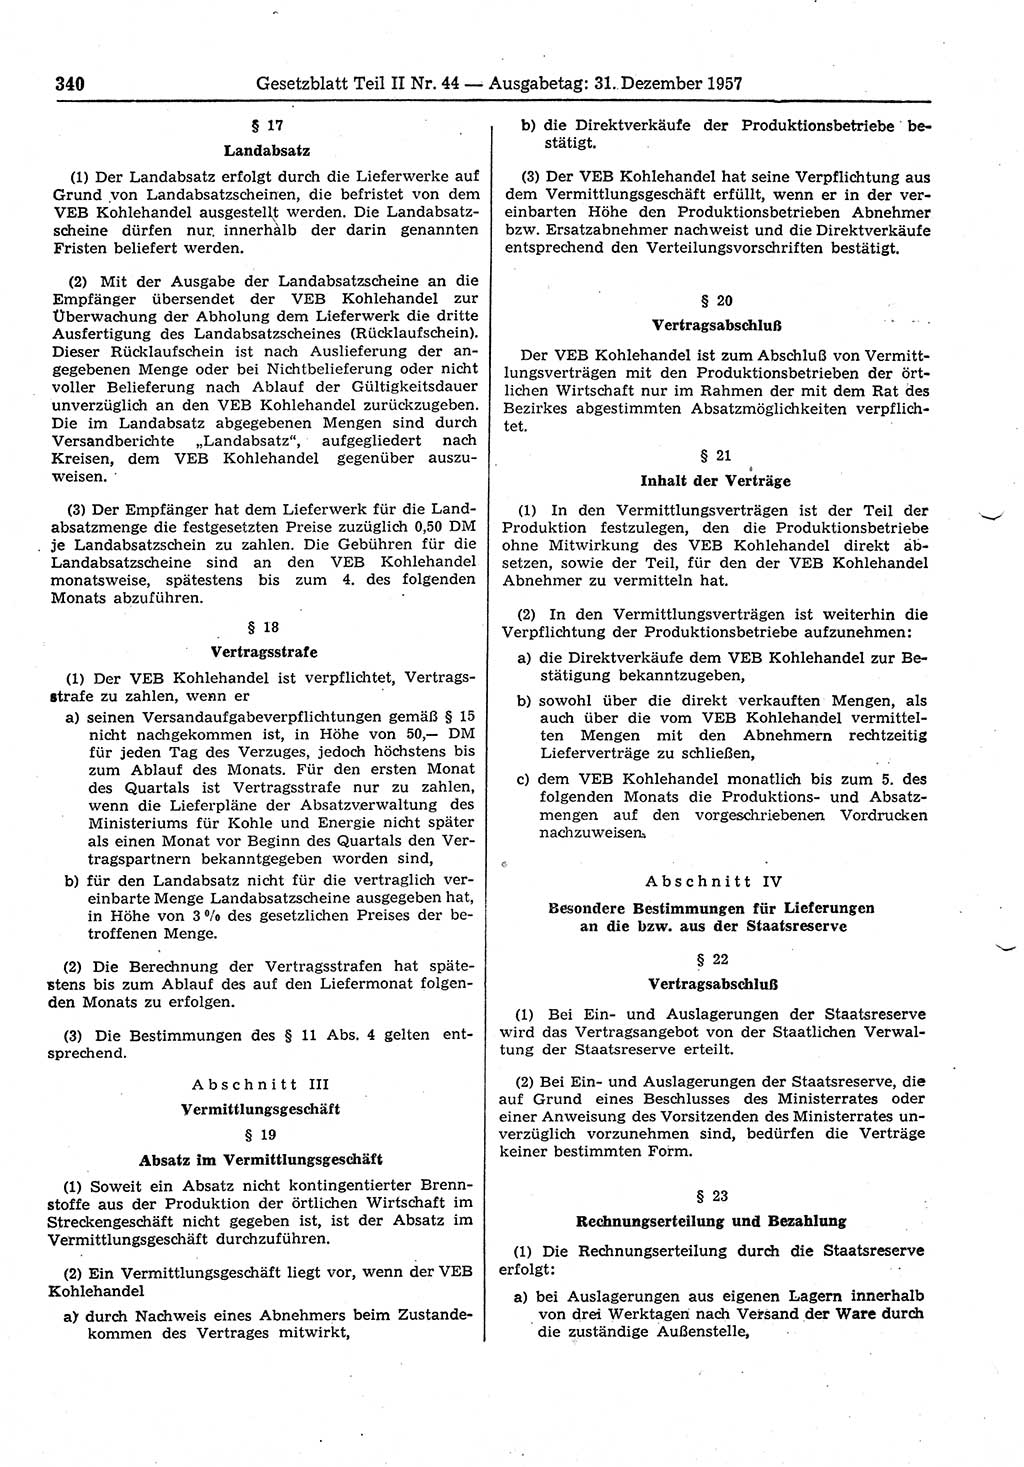 Gesetzblatt (GBl.) der Deutschen Demokratischen Republik (DDR) Teil ⅠⅠ 1957, Seite 340 (GBl. DDR ⅠⅠ 1957, S. 340)